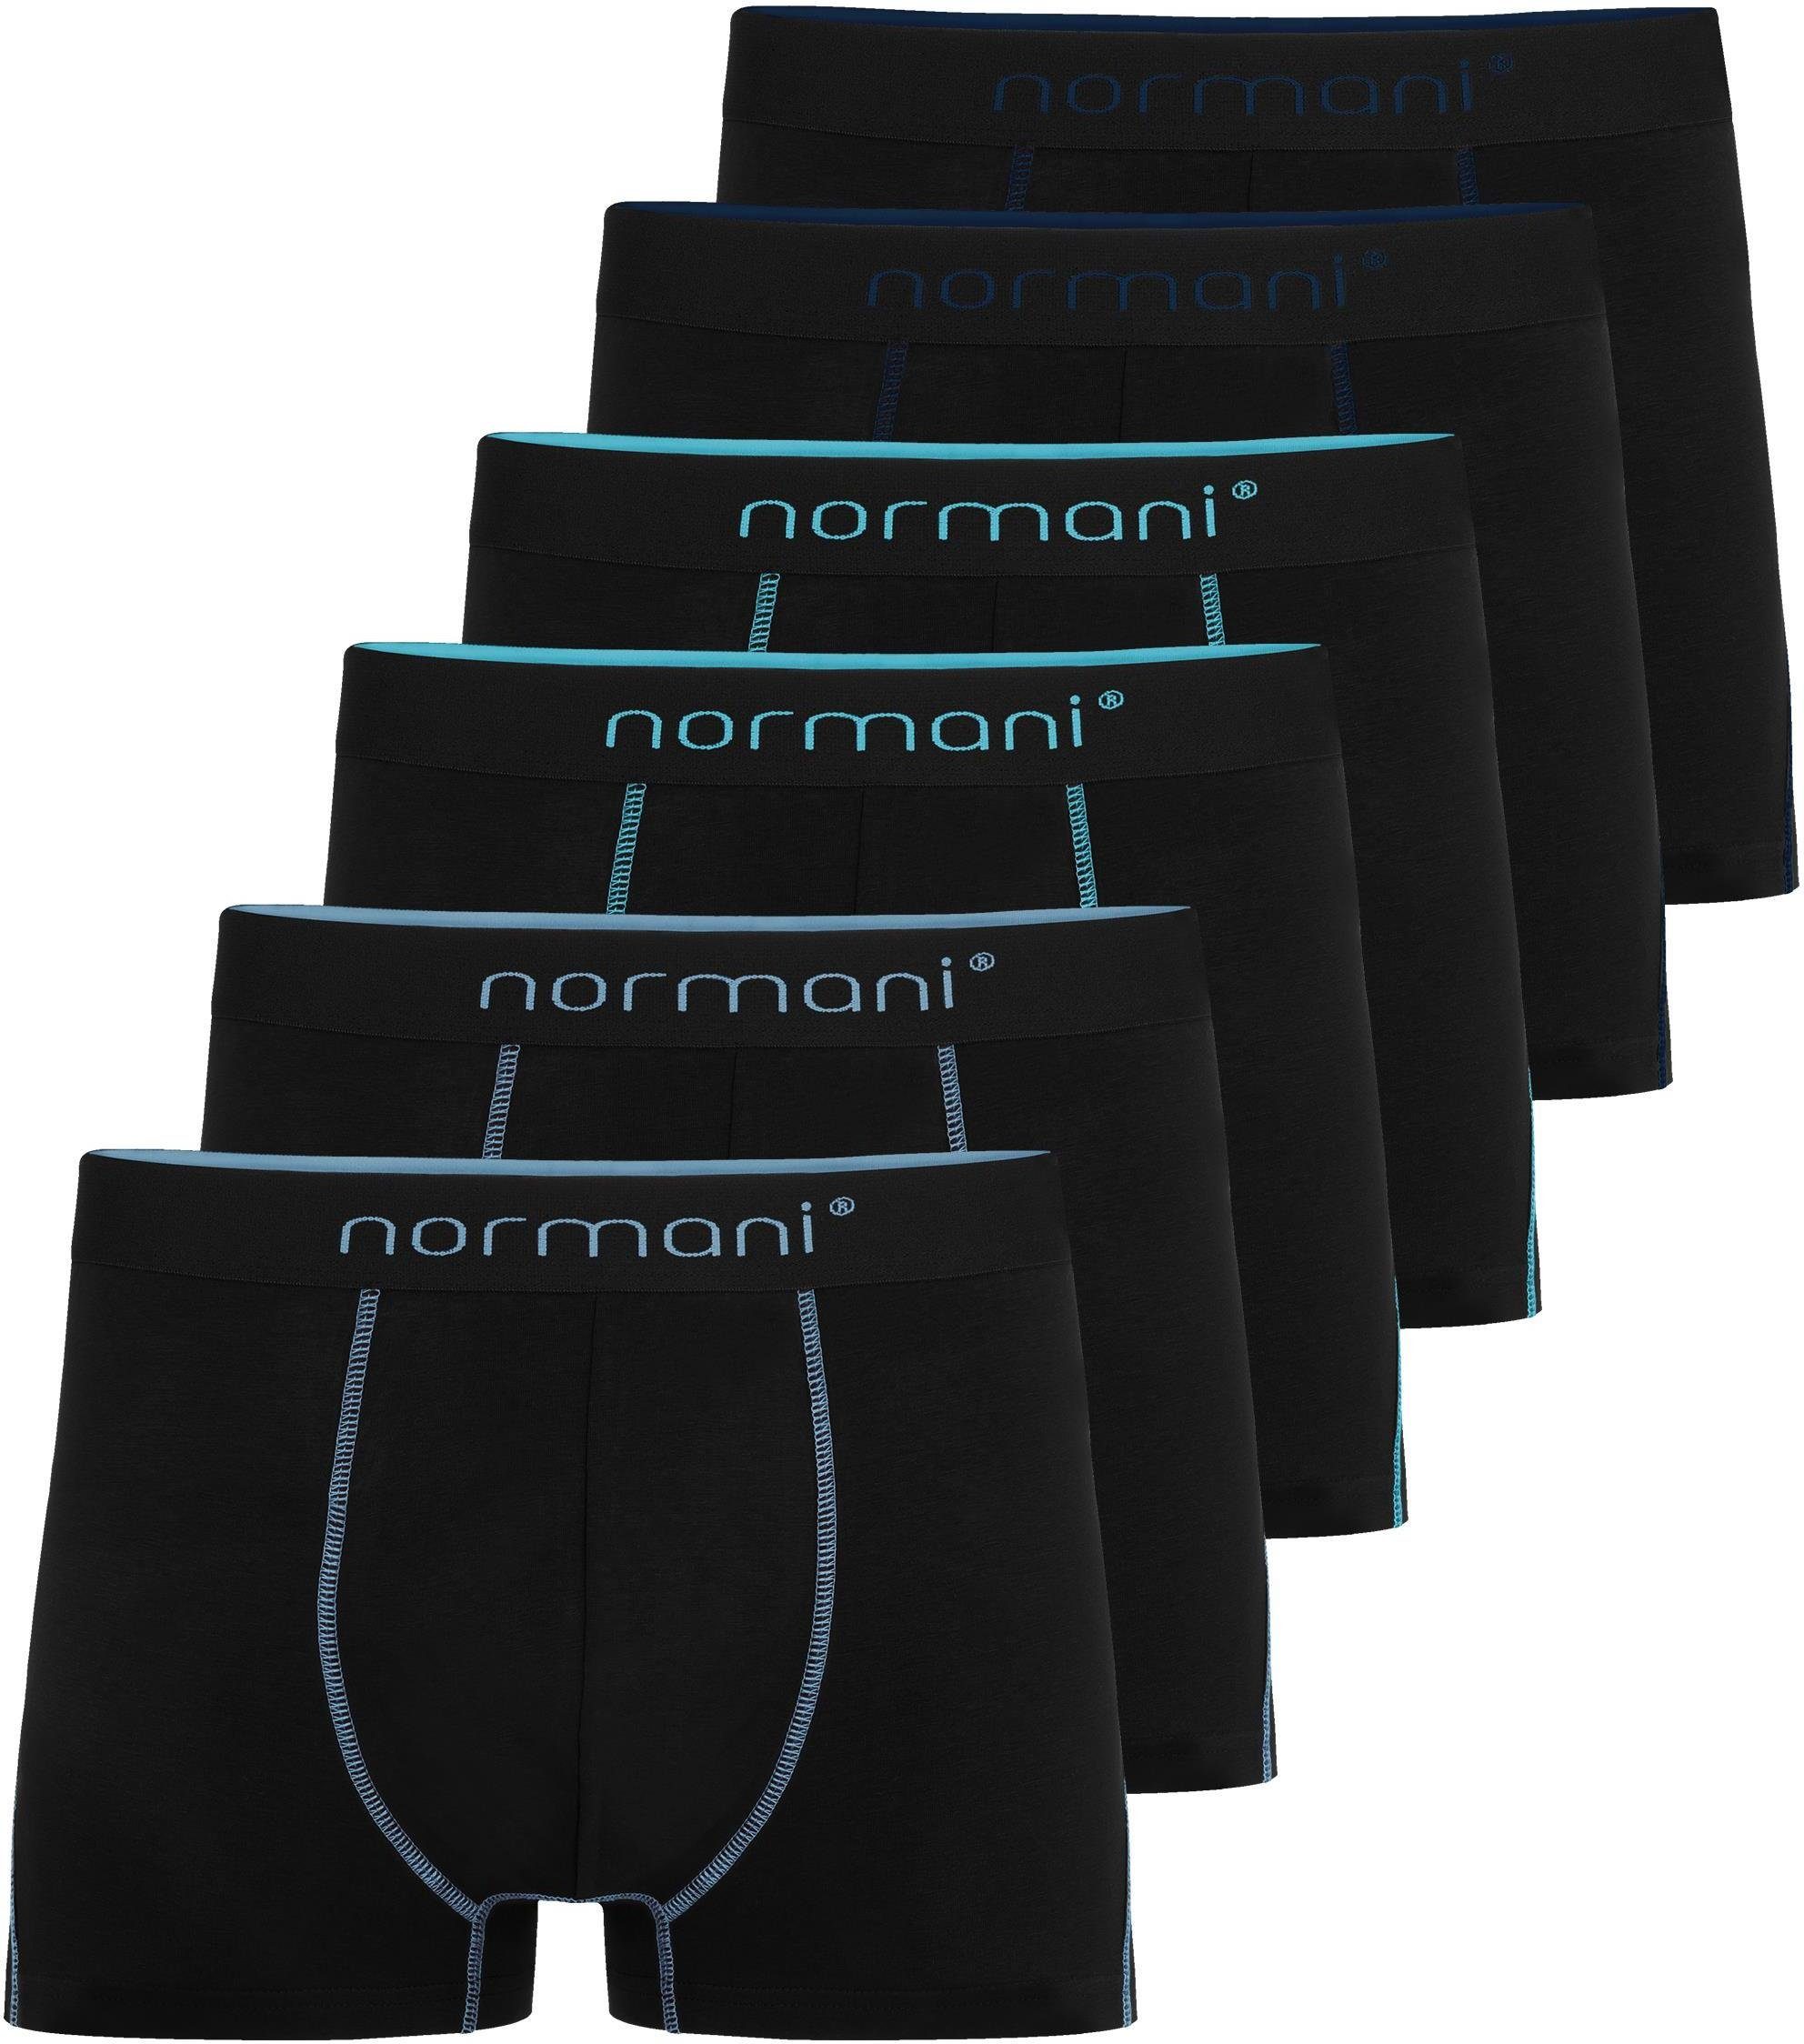 normani Boxershorts 6 Herren Baumwoll-Boxershorts Unterhose aus atmungsaktiver Baumwolle für Männer Dunkelblau/Hellblau/Türkis